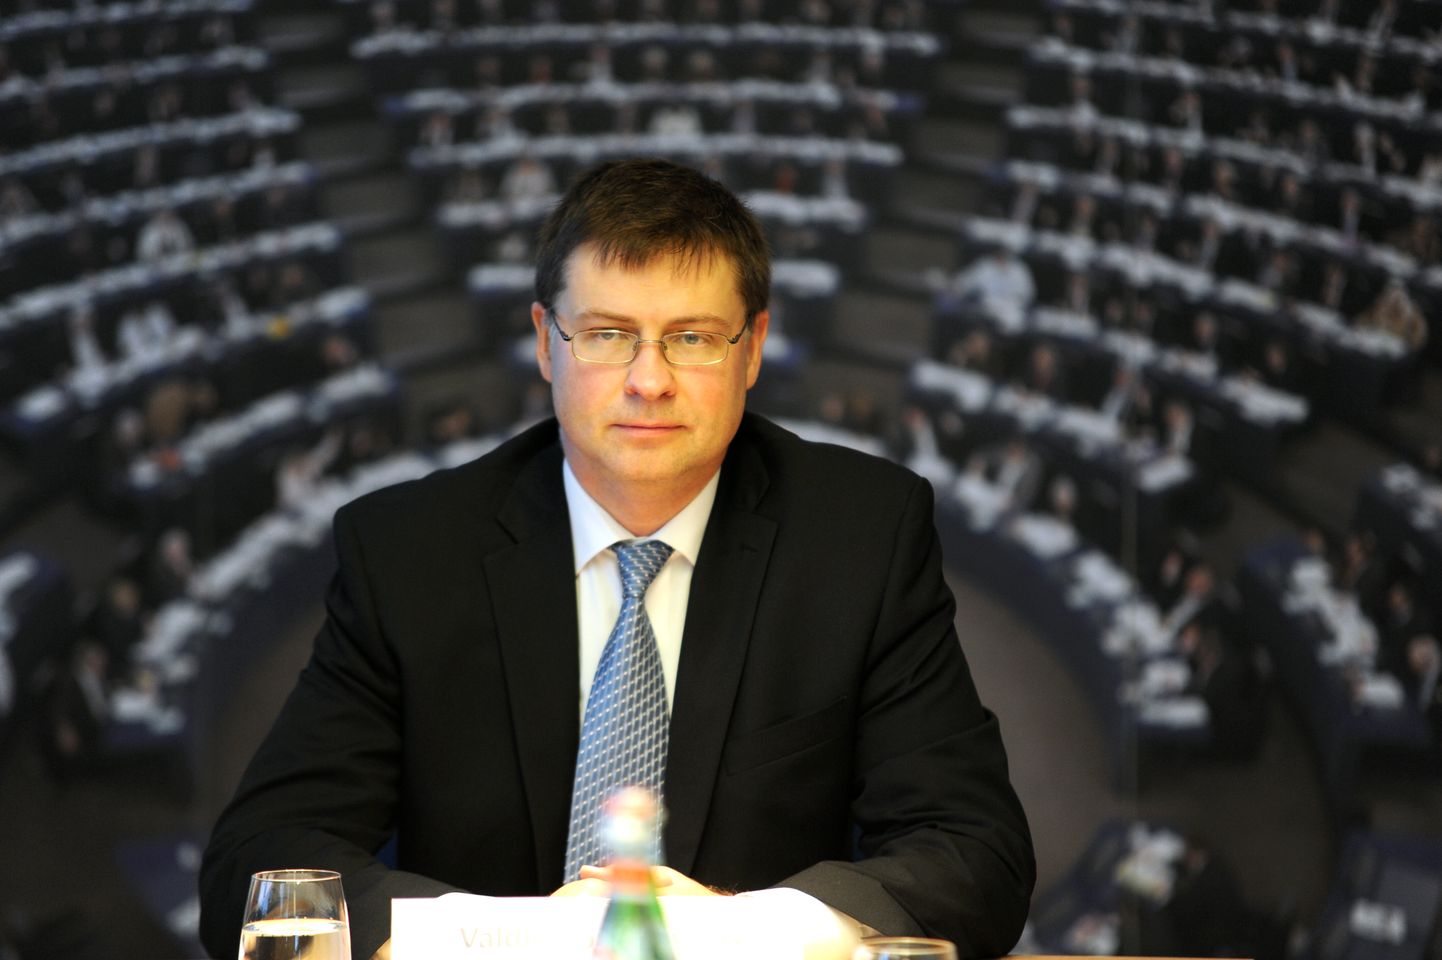 Eiropas Komisijas viceprezidenta amata kandidāts, Eiropas Parlamenta (EP) deputāts Valdis Dombrovskis piedalās EP Informācijas biroja Latvijā rīkotajā diskusijā par mācībām no eirozonas satricinājumiem un izaicinājumiem.